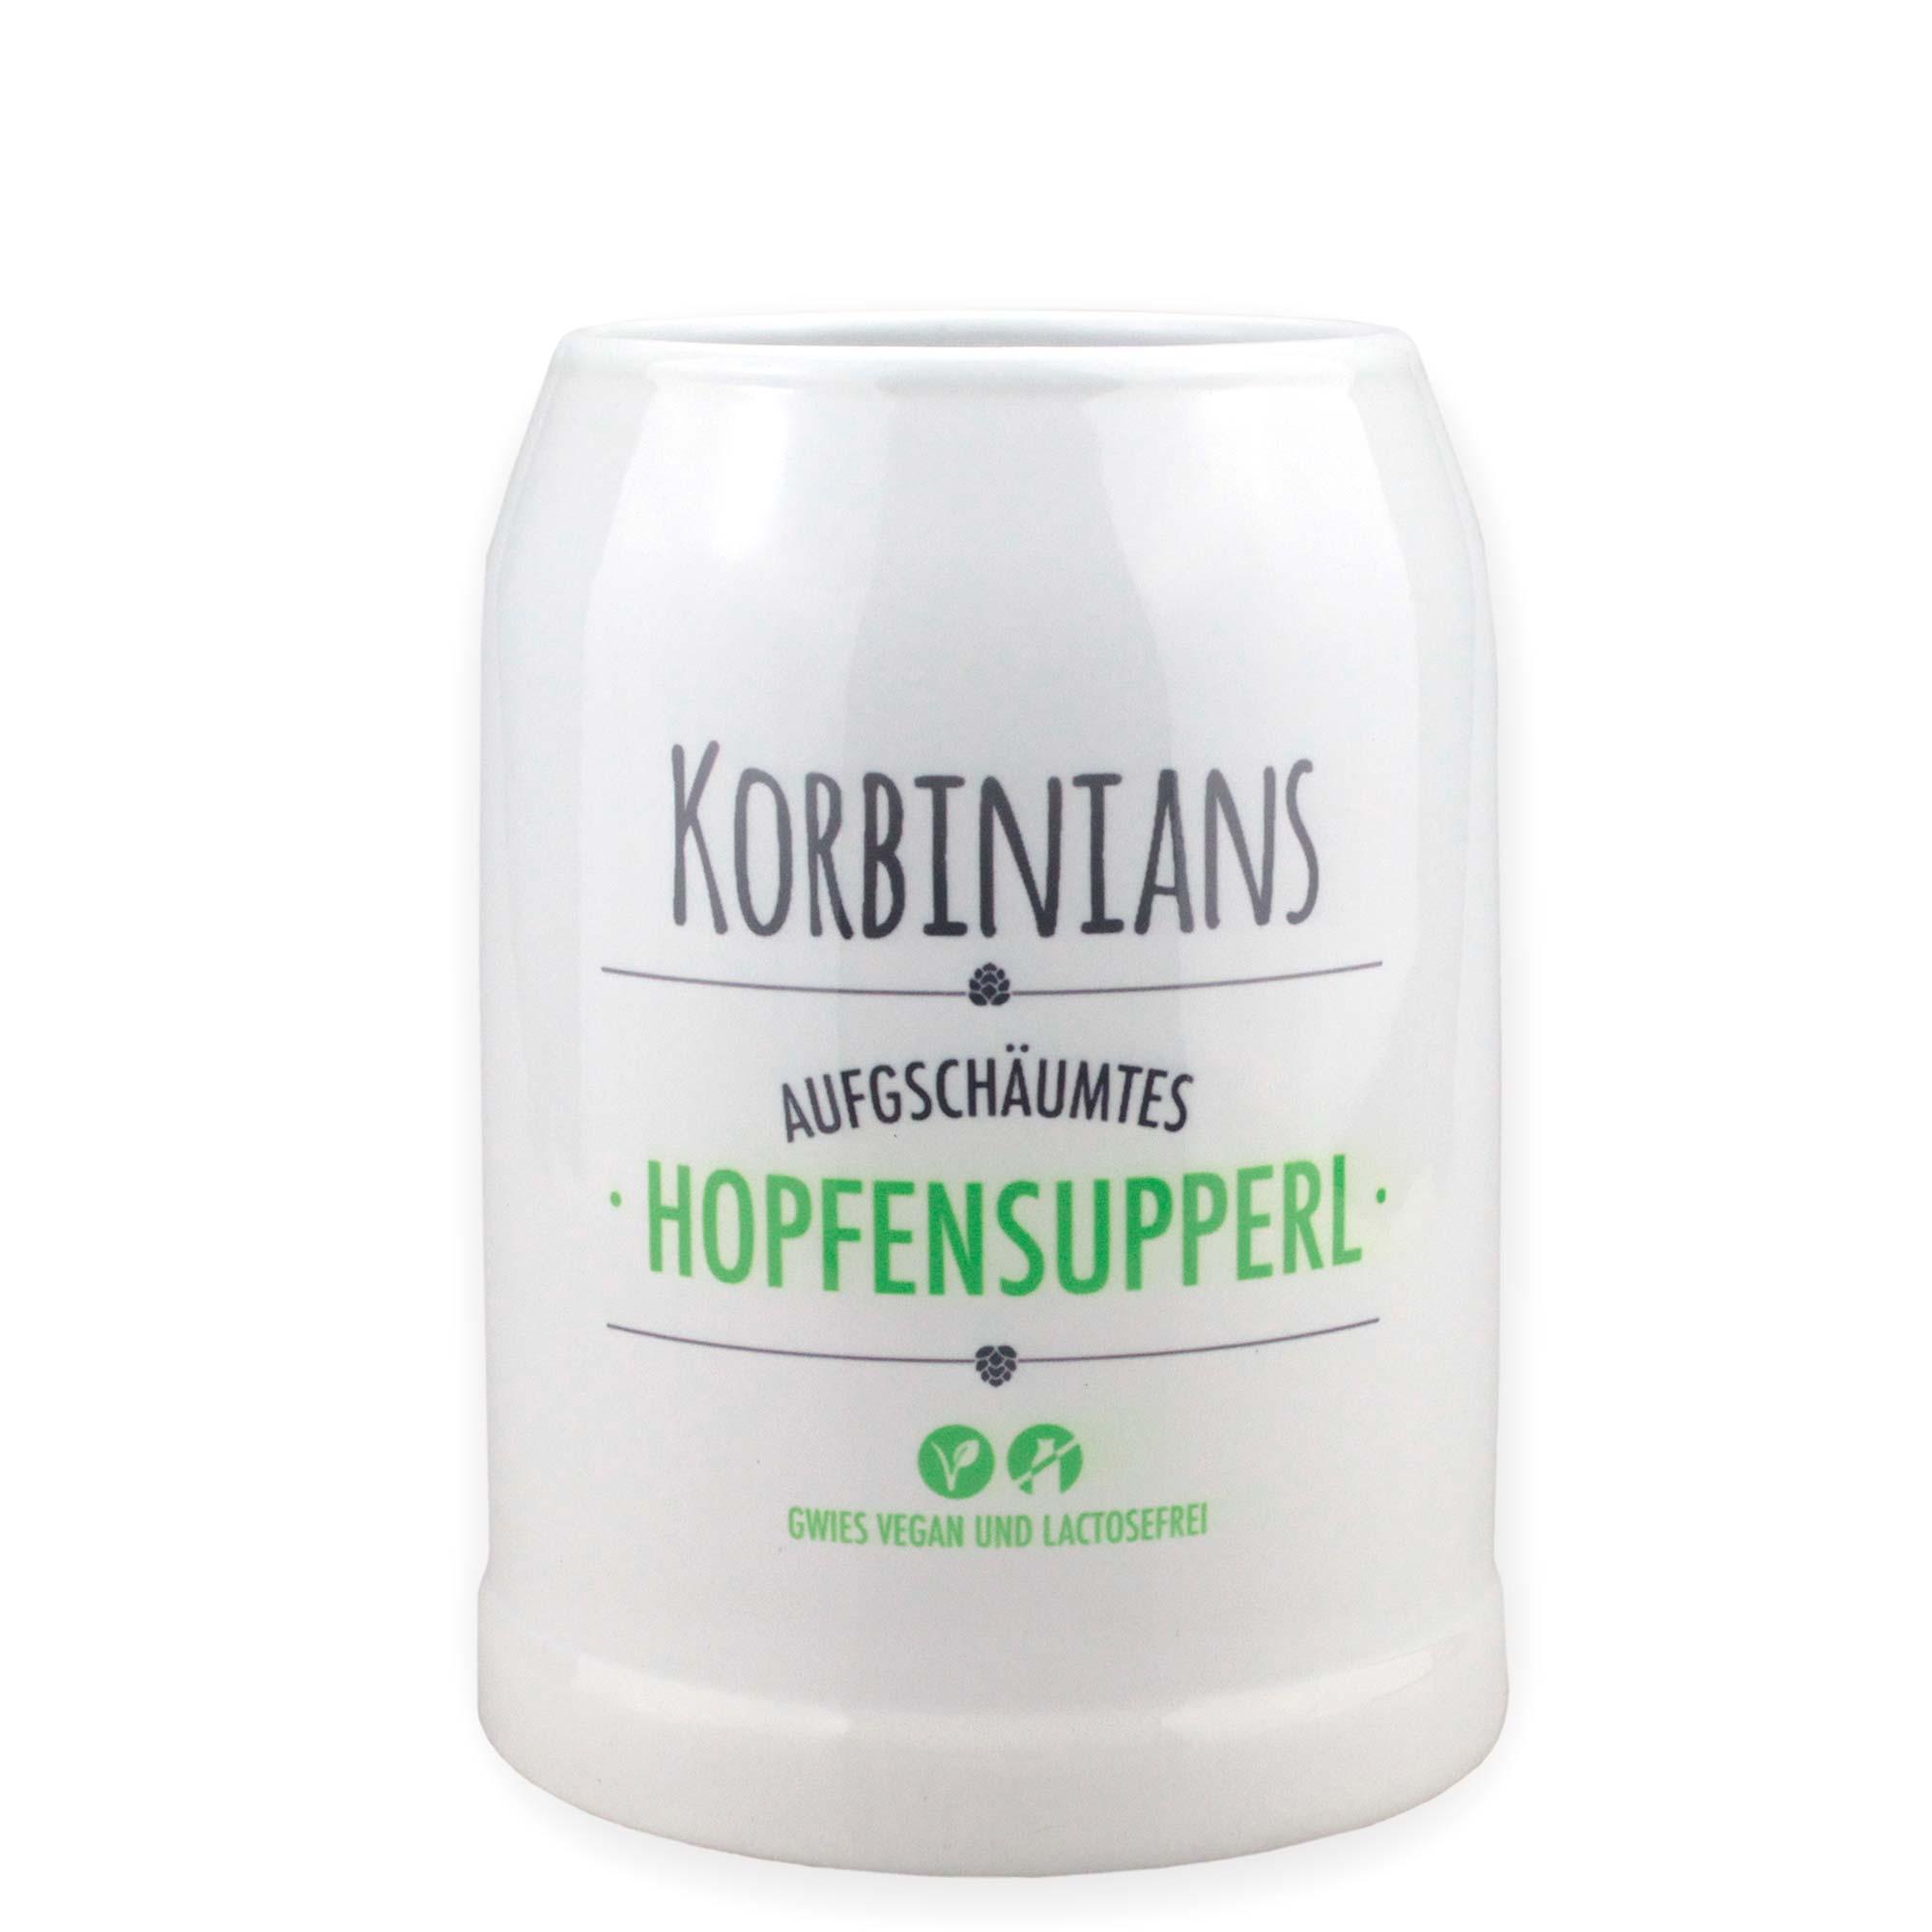 Stein Bierkrug "Hopfensupperl" mit Wunschname - bavariashop - mei LebensGfui